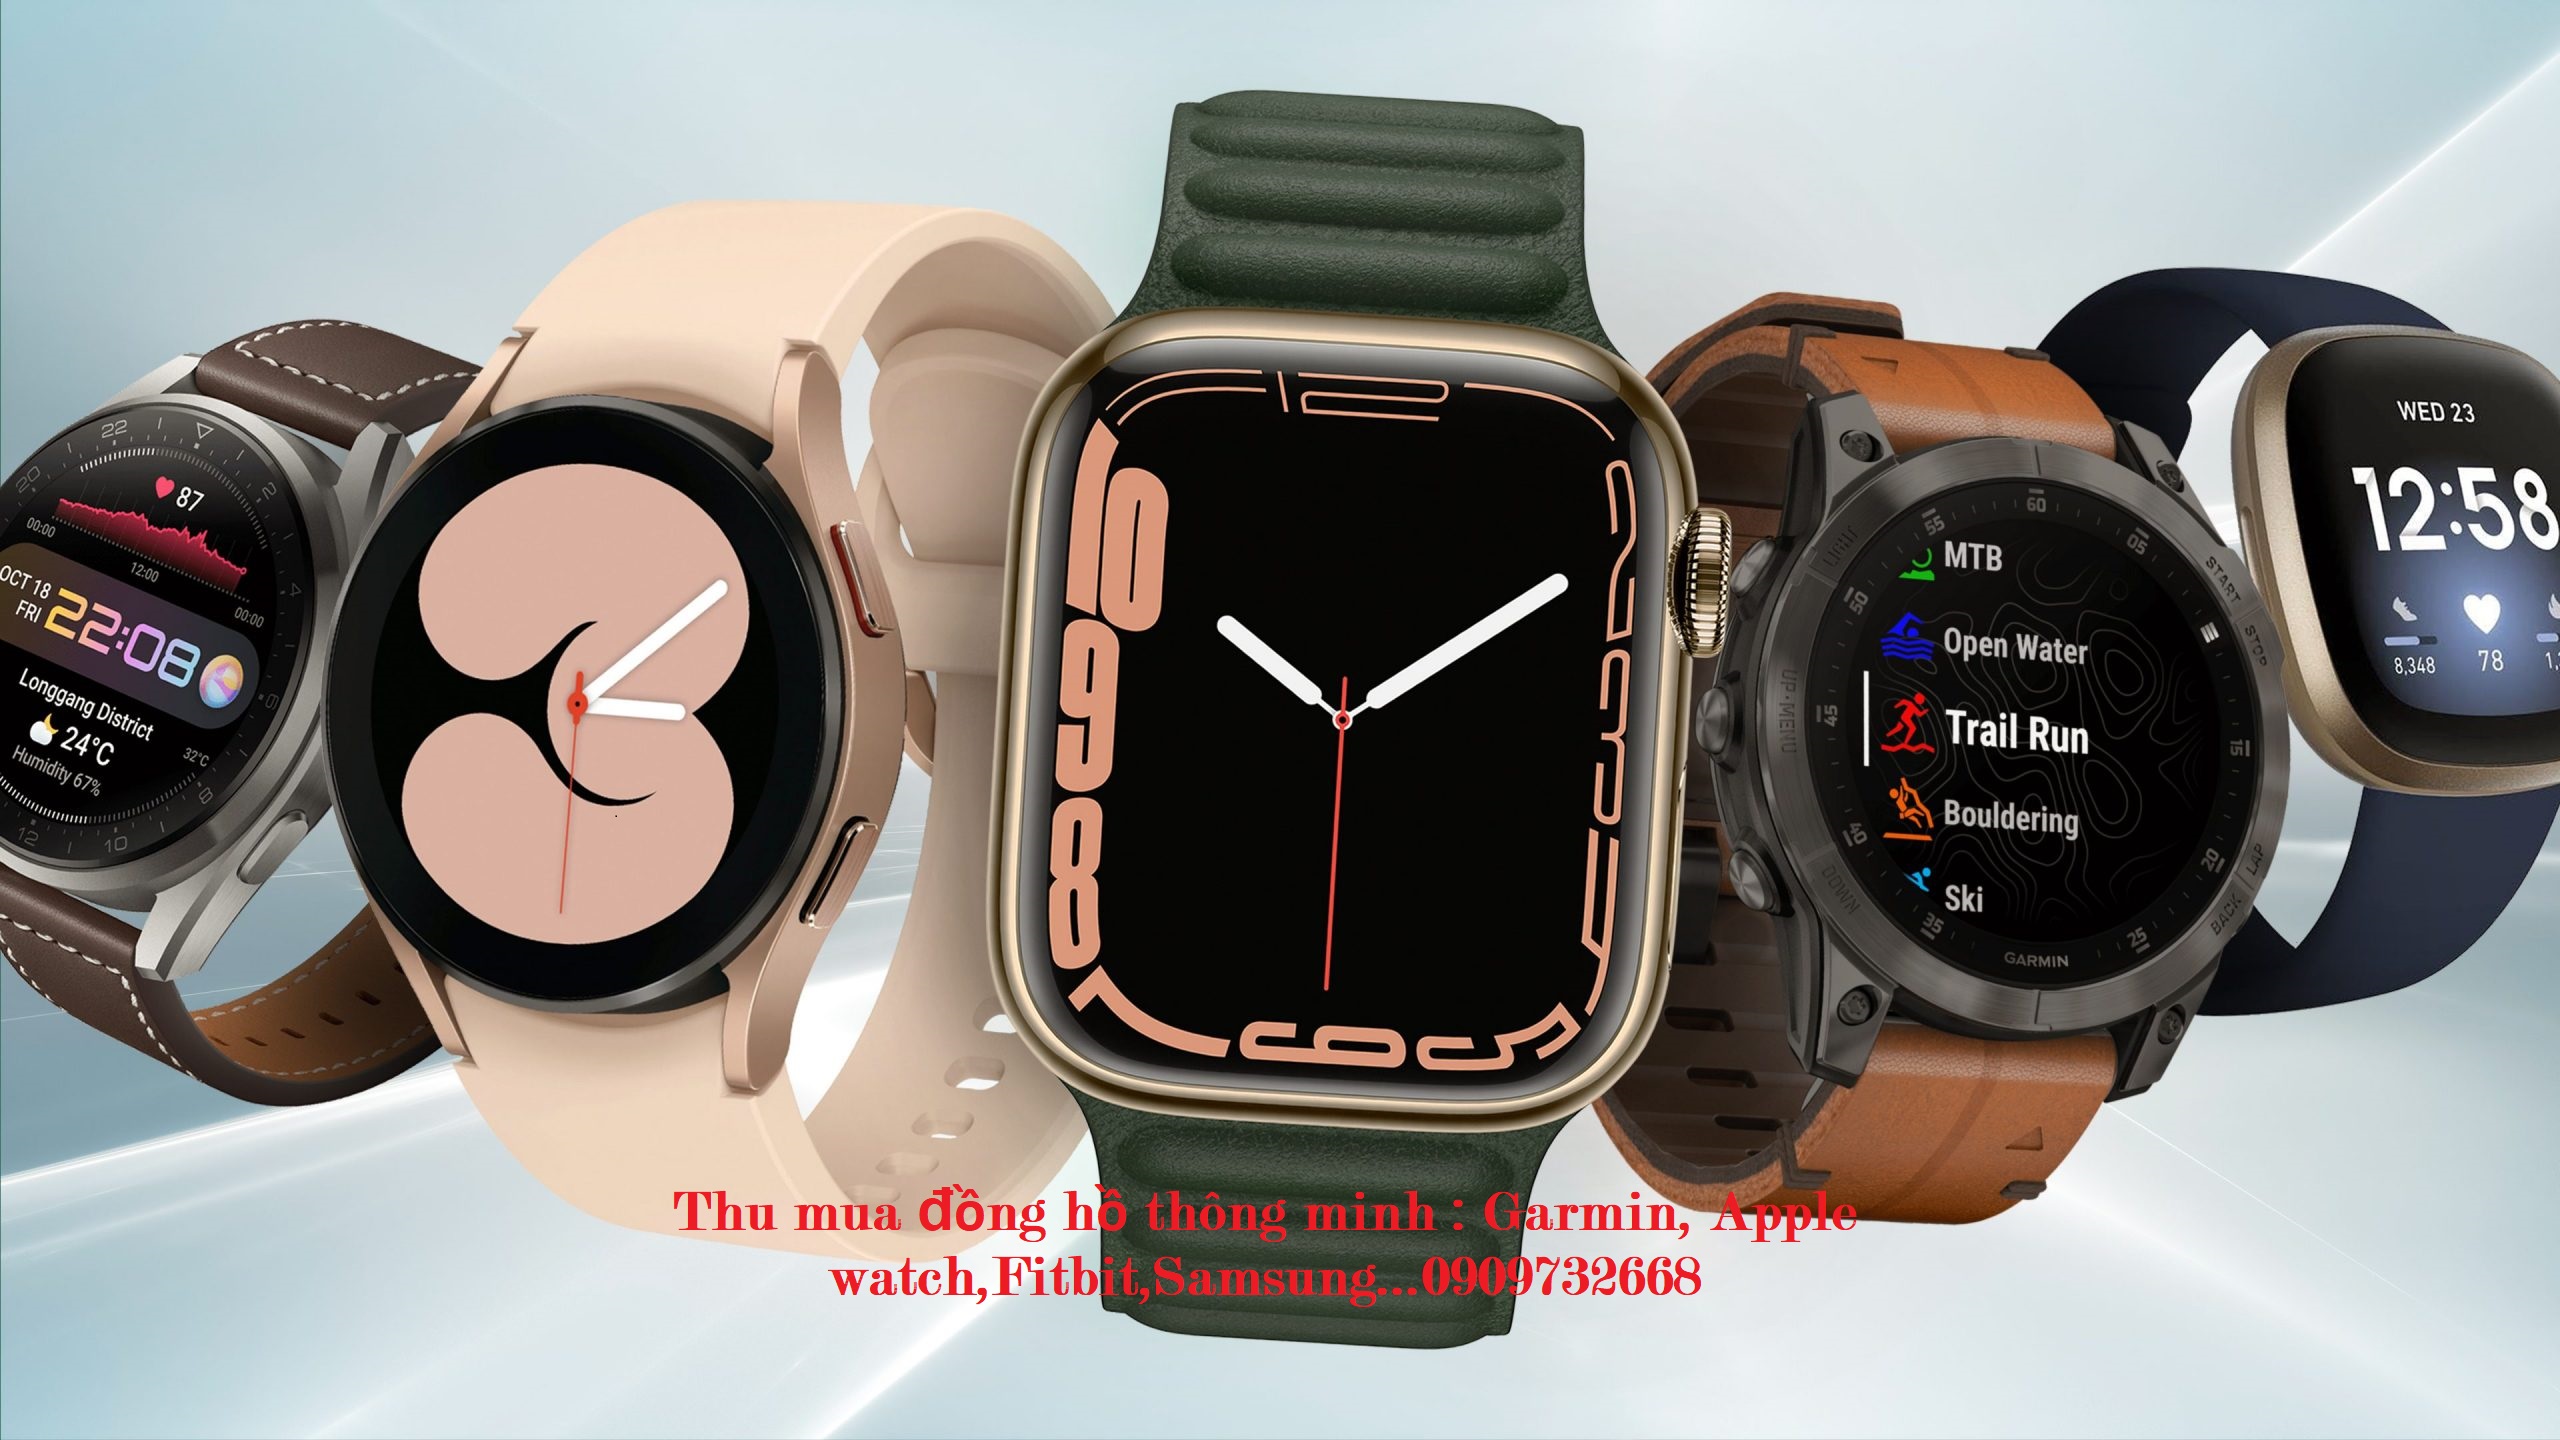 Thu mua đồng hồ thông minh mới cũ giá cao tại TP.HCM